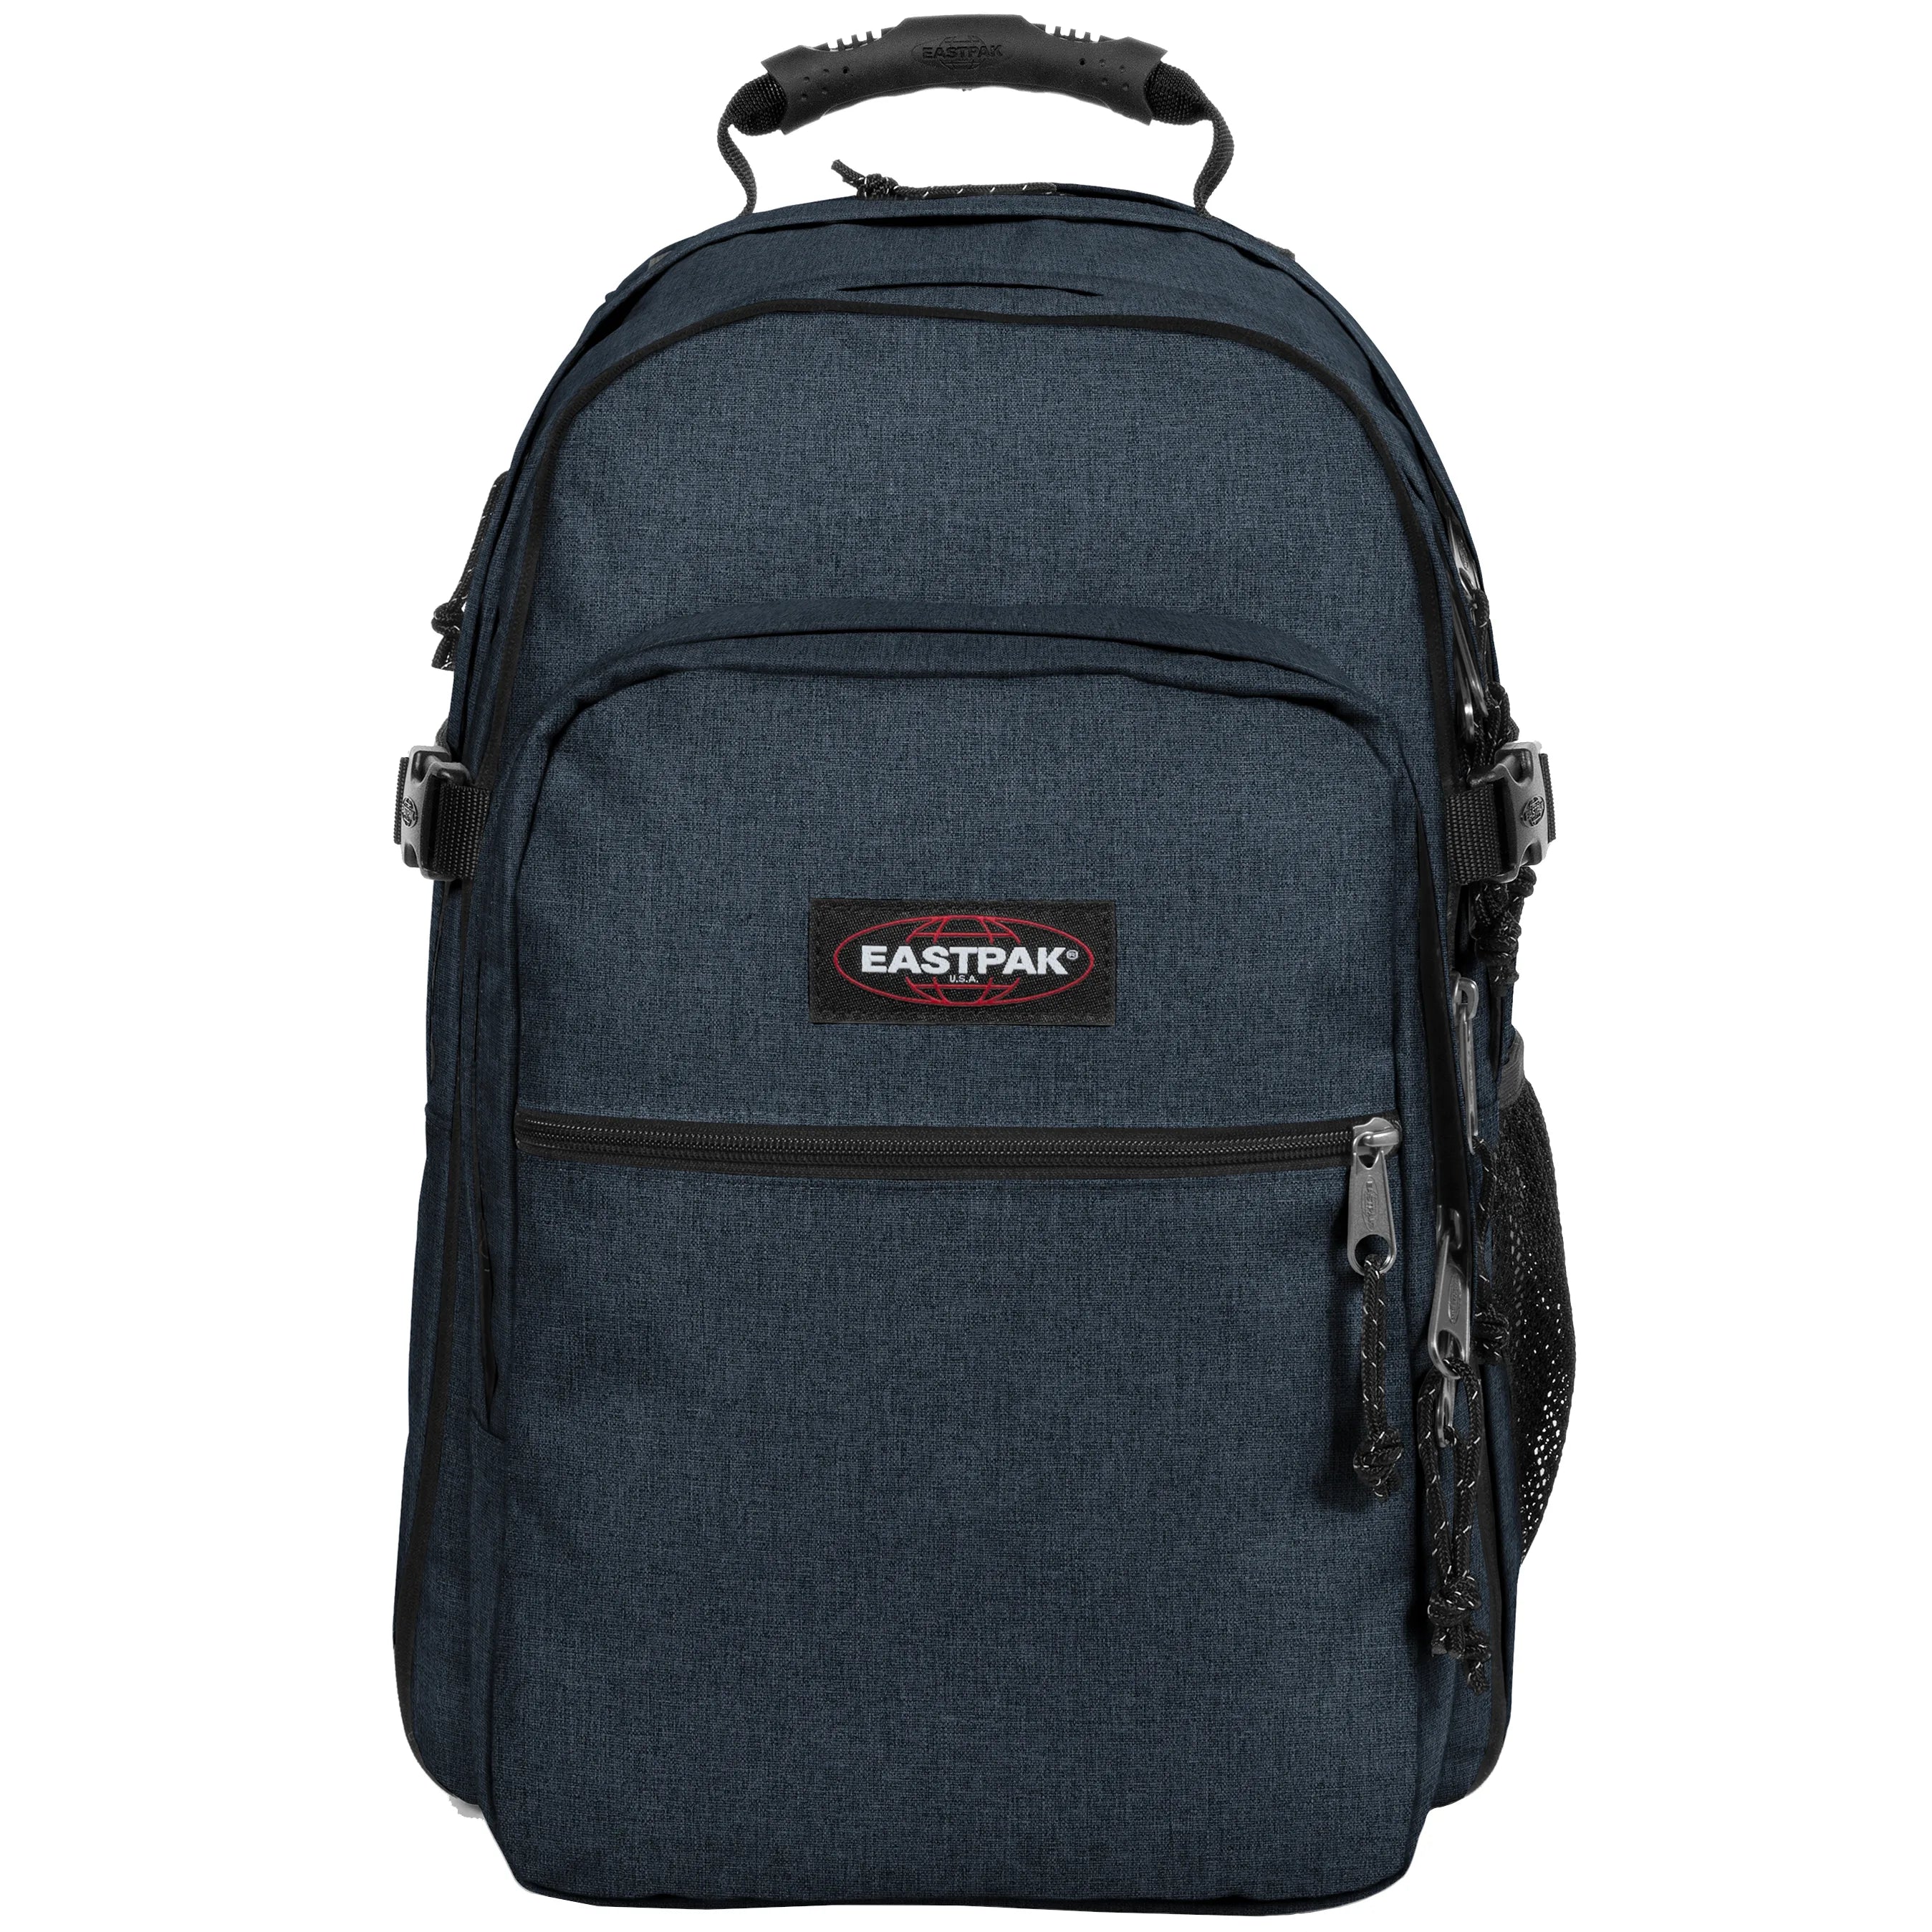 Eastpak Authentic Re-Check Tutor sac à dos avec compartiment pour ordinateur portable 48 cm - triple denim